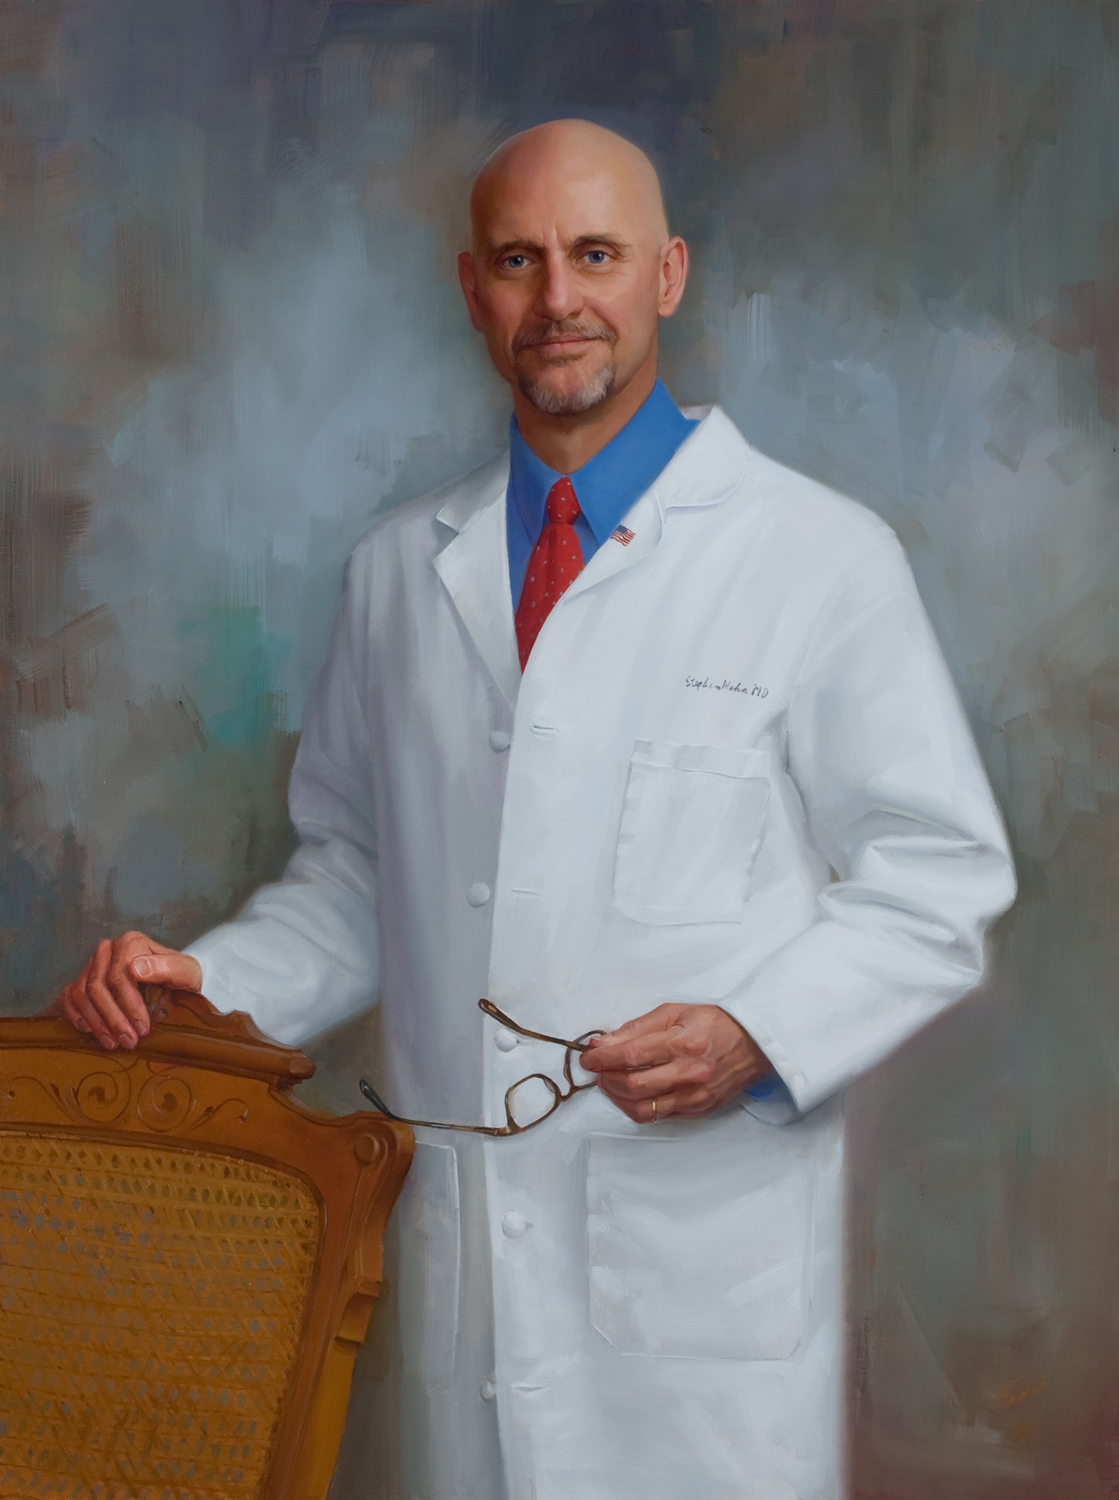 Dr. Stephen Hahn